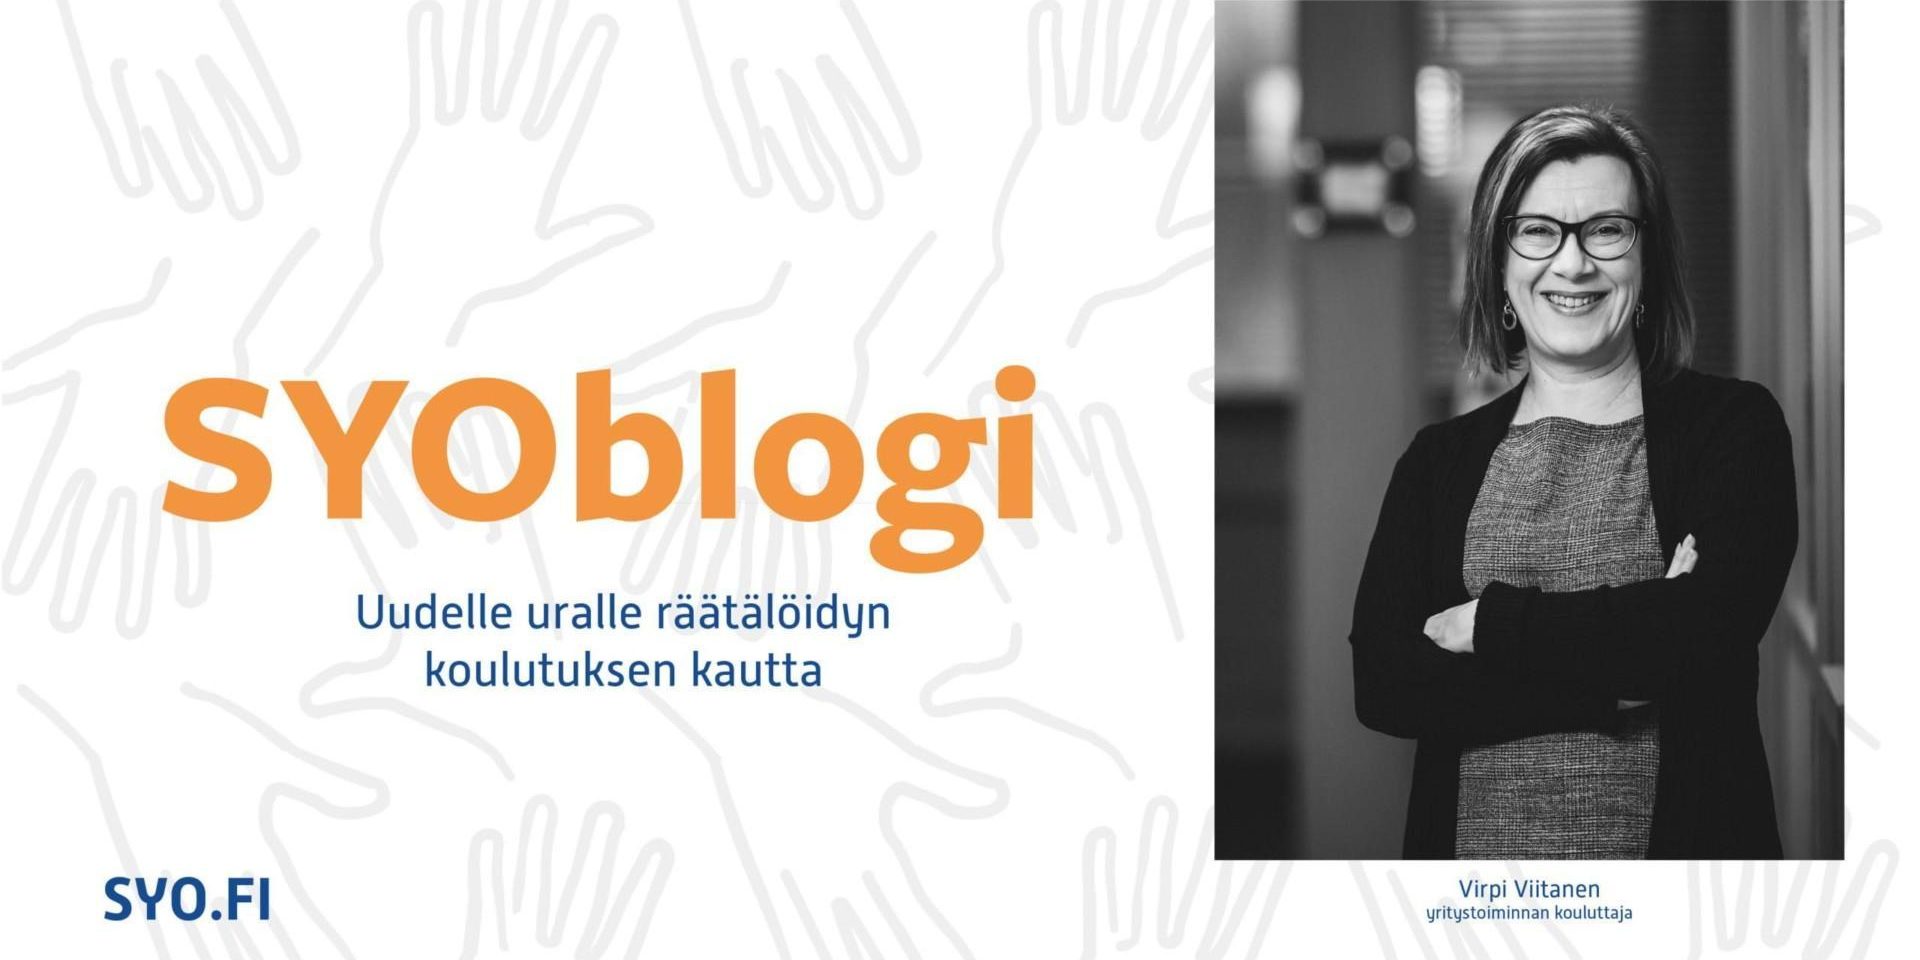 SYOblogi, Uudelle uralle räätälöidyn koulutuksen kautta, koulutusvastaava Virpi Viitanen.